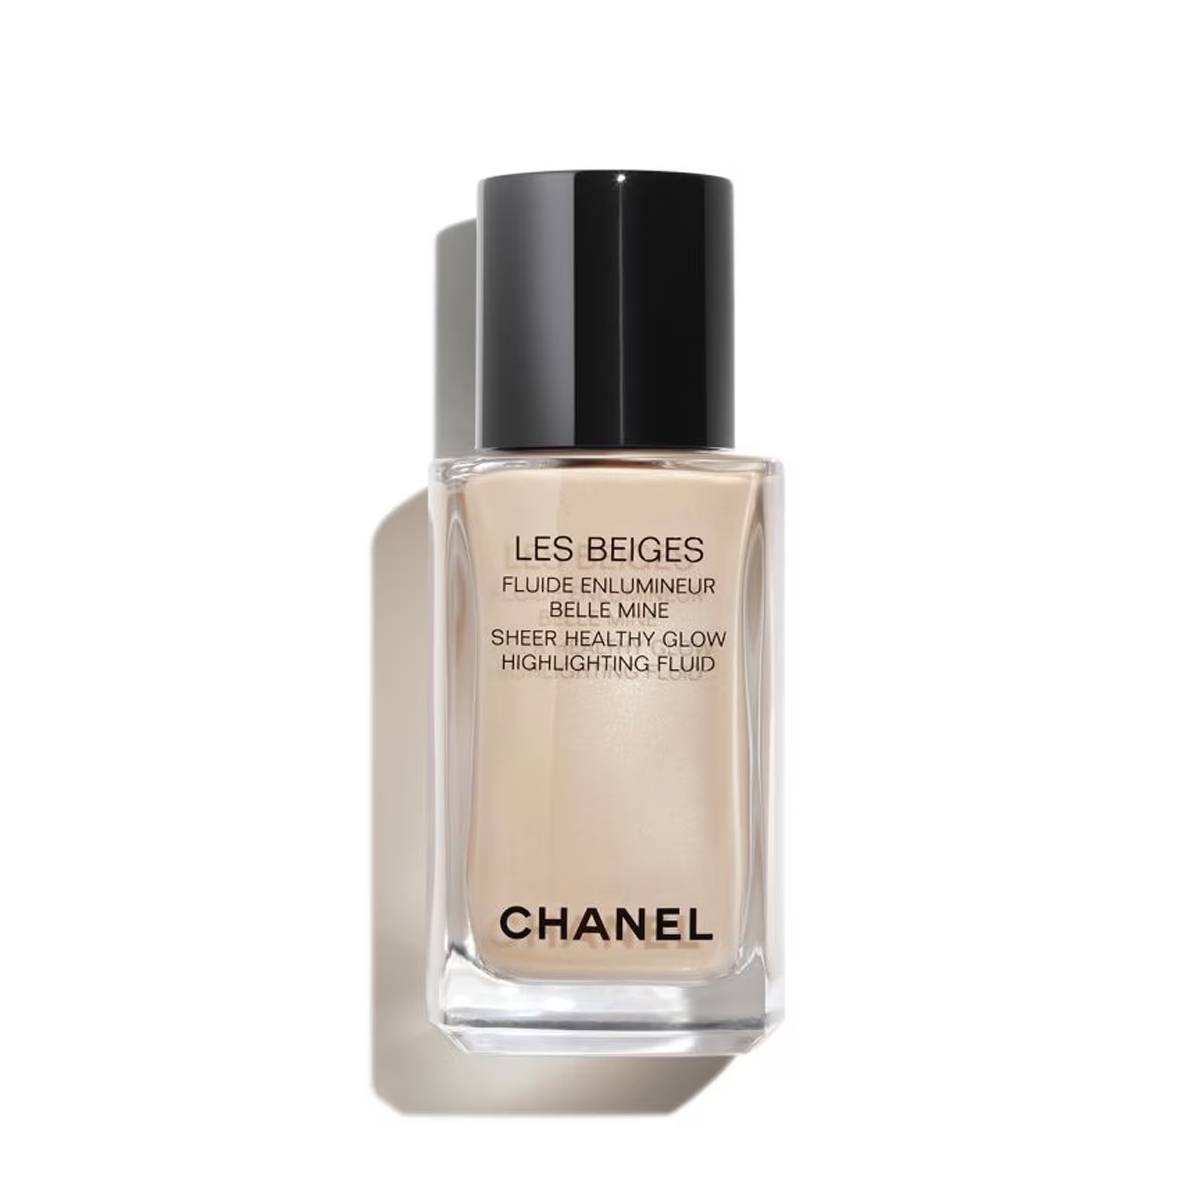 Fluido iluminador Sun kissed Les Beiges de Chanel.